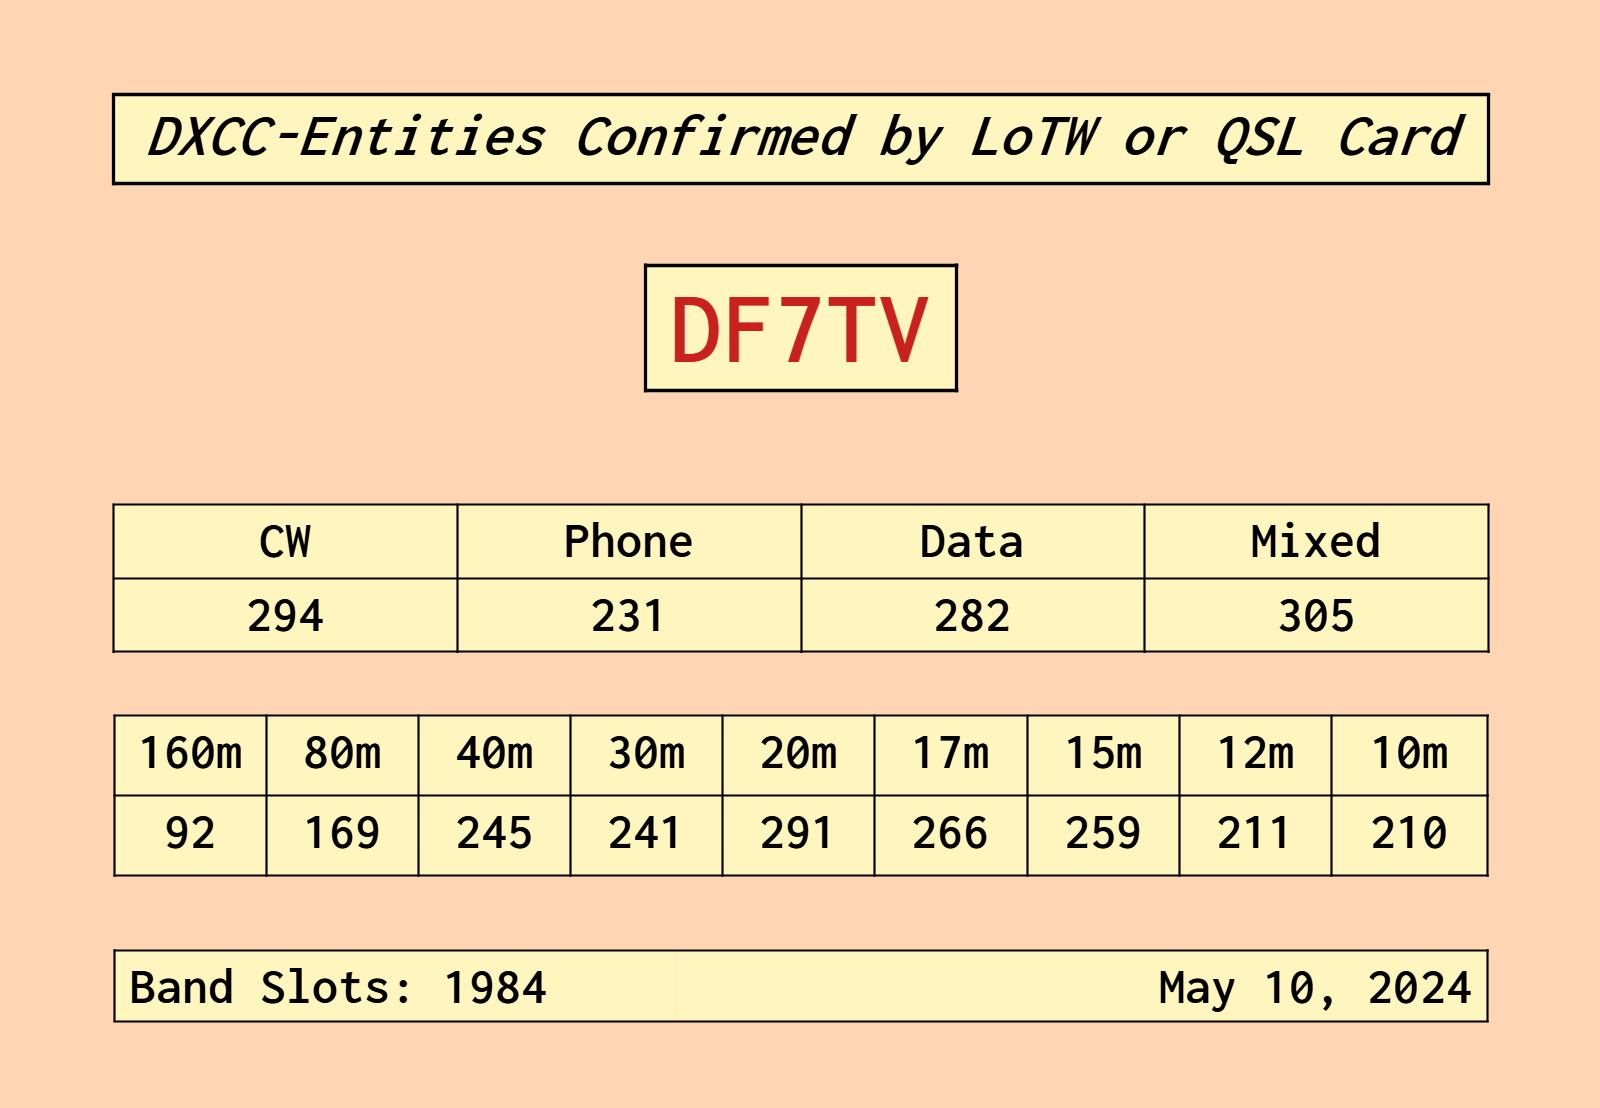 DF7TV-DXCC-ENTITIES-CONFIRMED